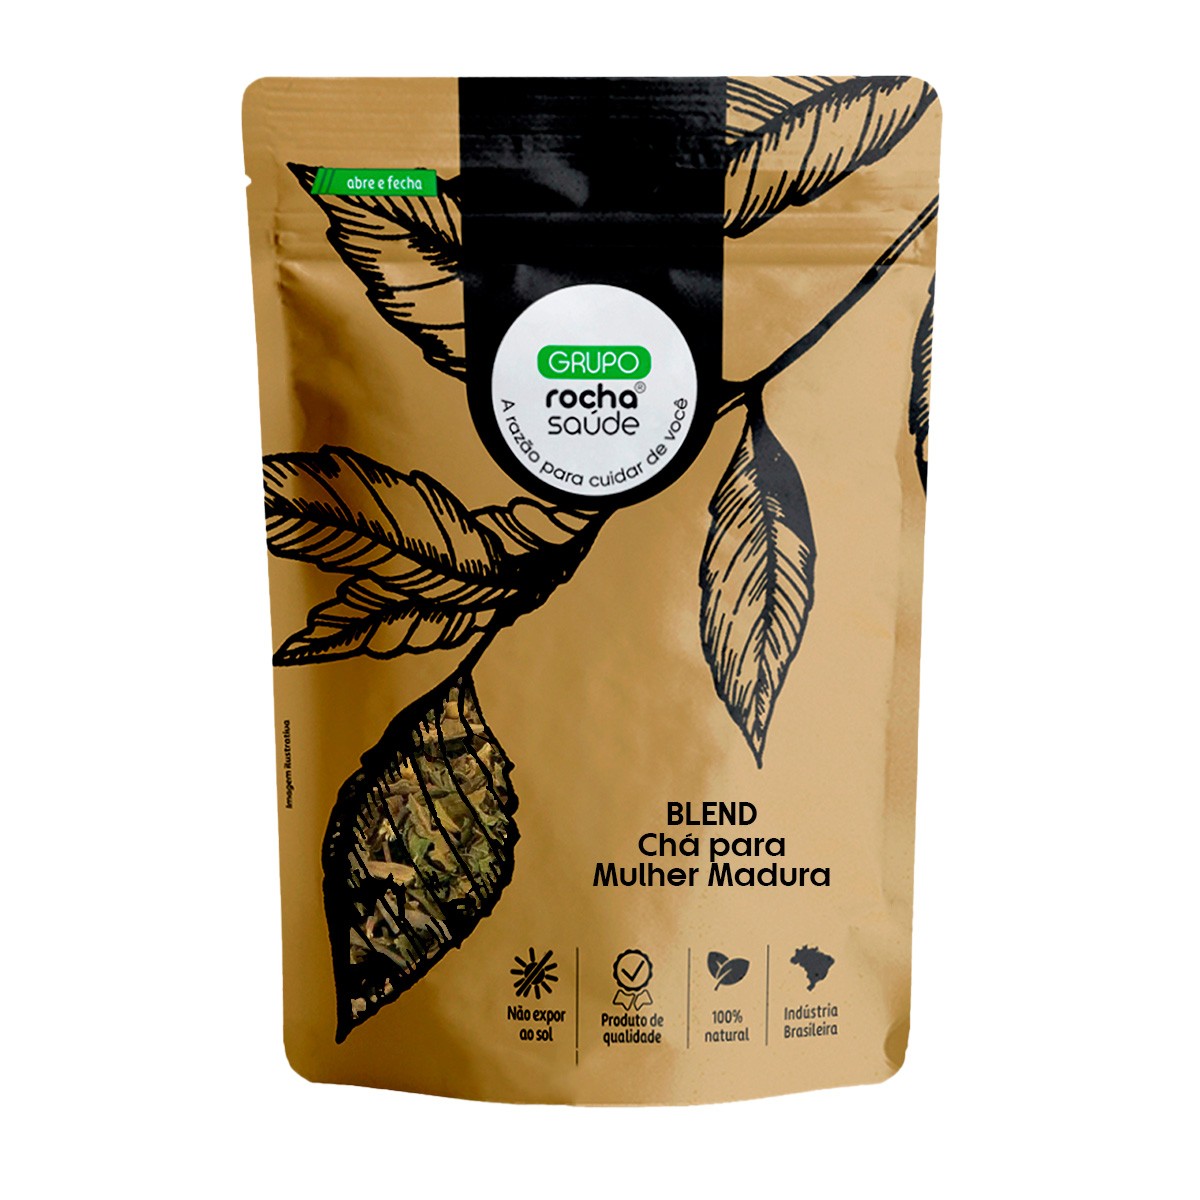 Blend - Chá para Mulher Madura - 100% Natural - Alta Qualidade